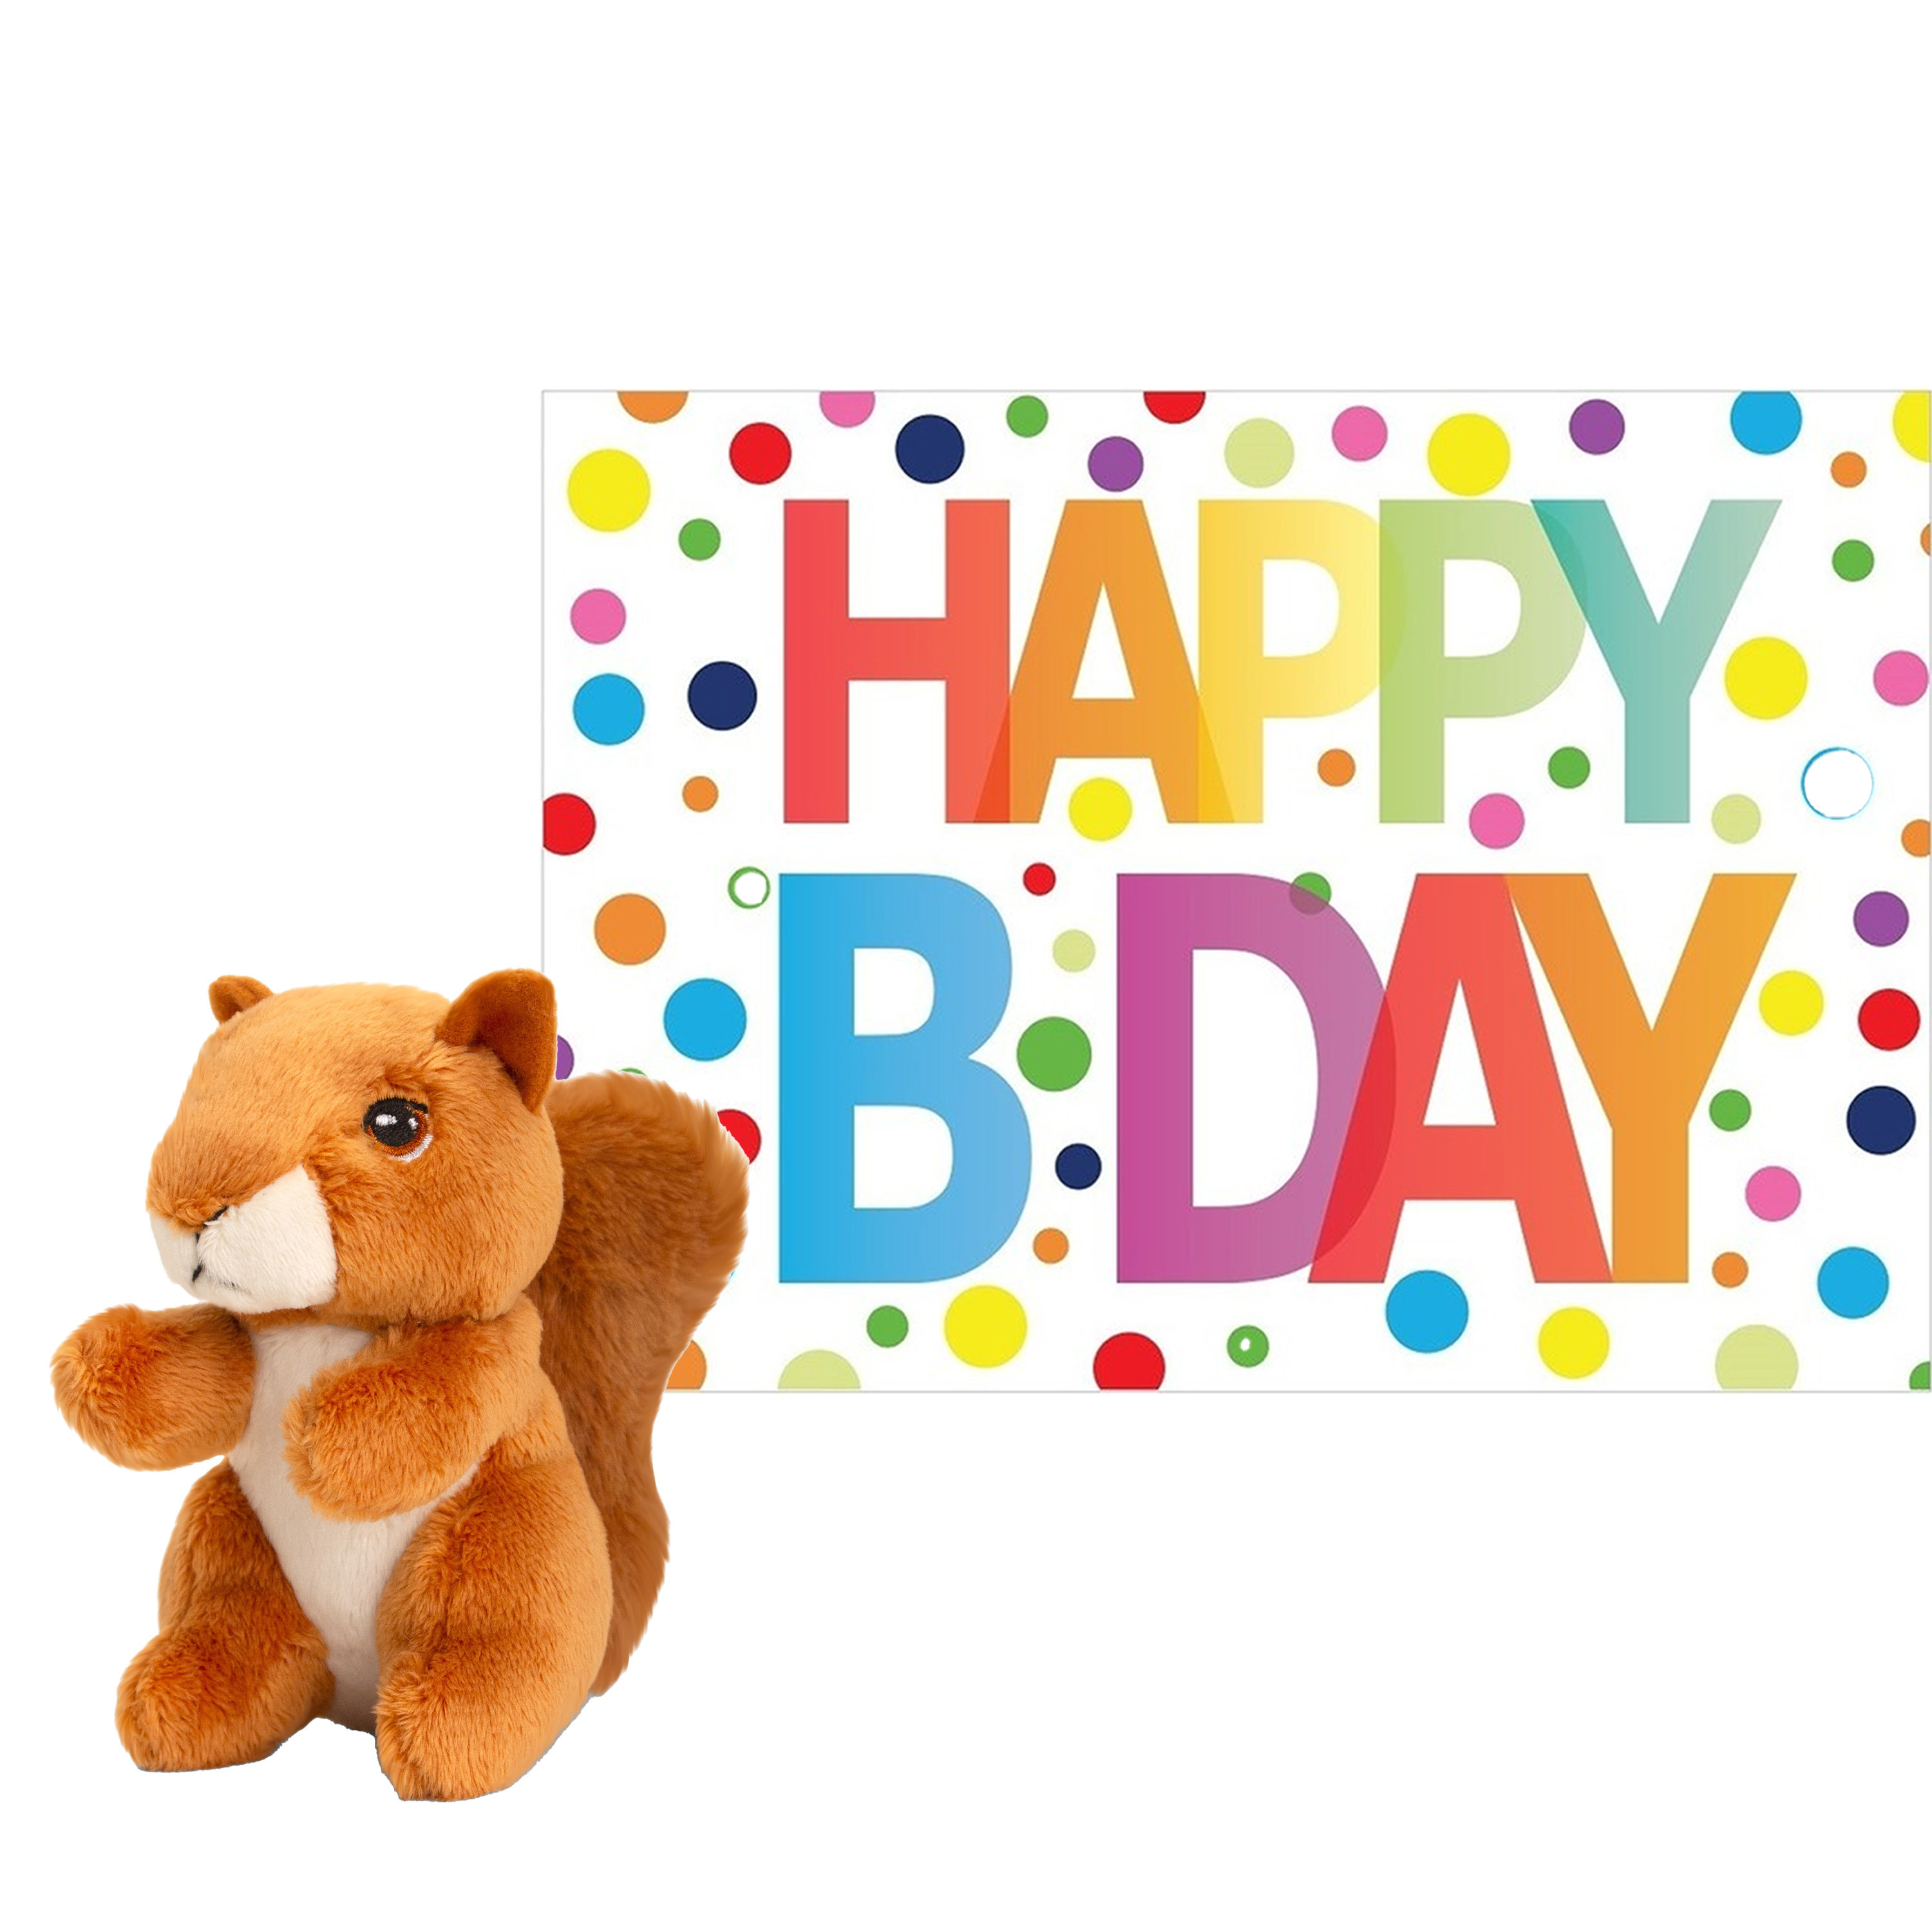 Keel Toys Pluche dieren knuffel eekhoorn 12 cm met Happy Birthday wenskaart -